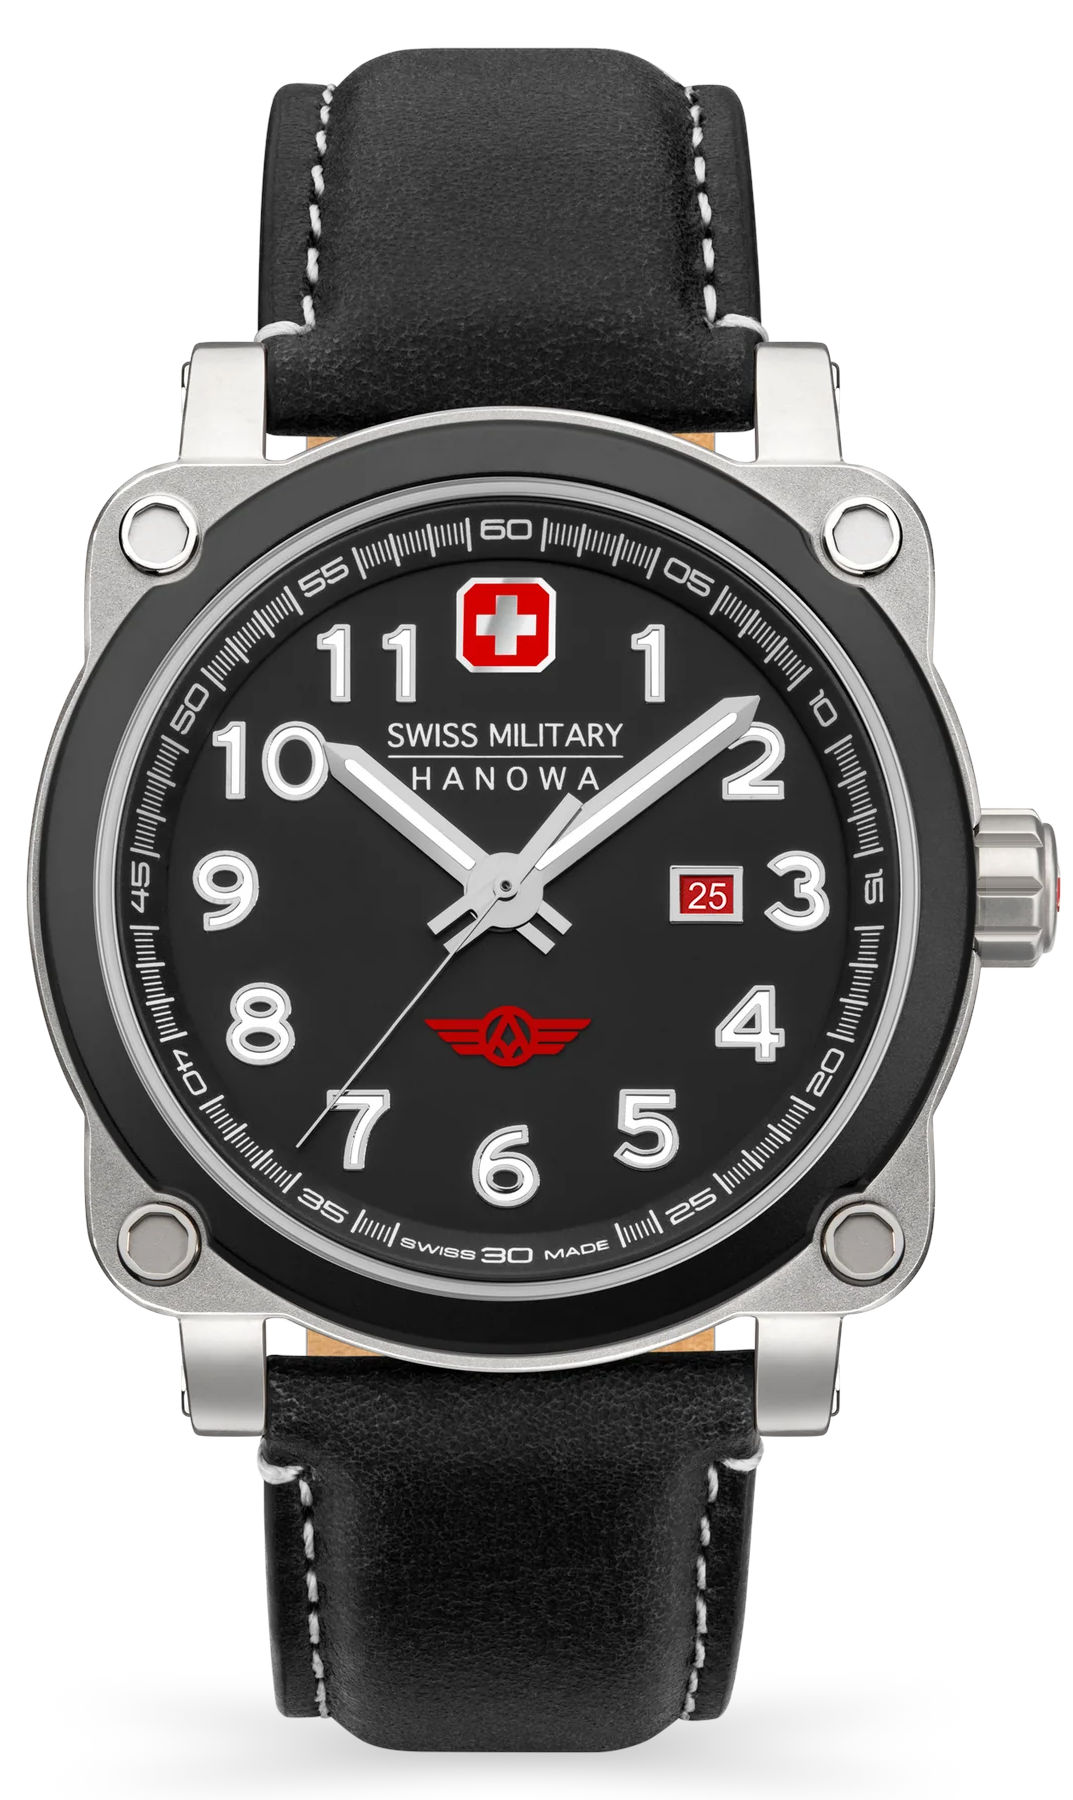  Swiss Military Hanowa SMWGB2101302